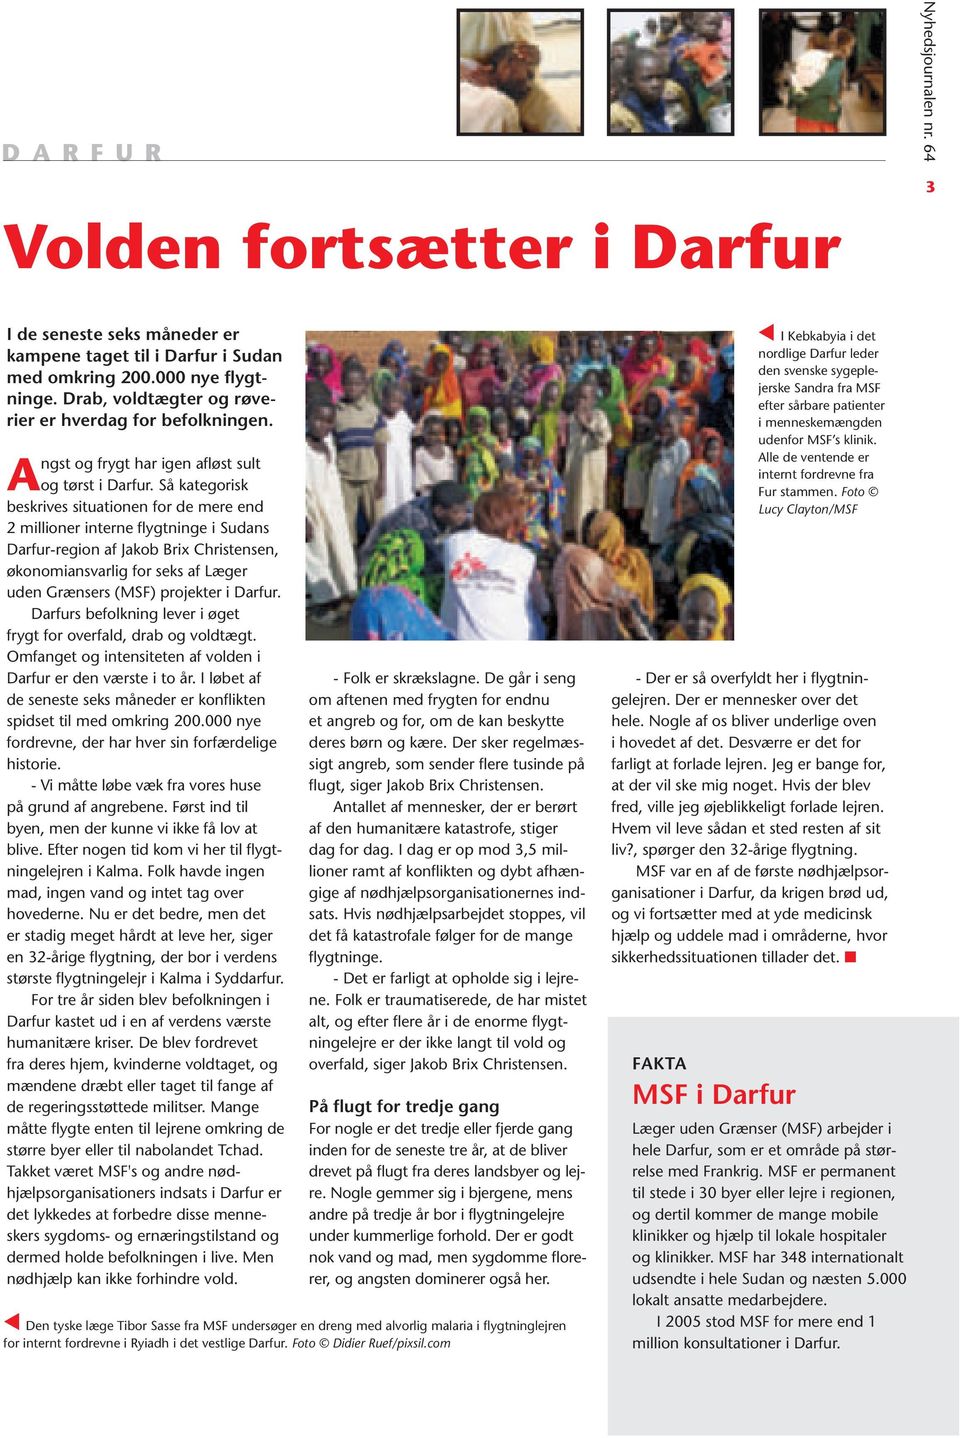 Så kategorisk beskrives situationen for de mere end 2 millioner interne flygtninge i Sudans Darfur-region af Jakob Brix Christensen, økonomiansvarlig for seks af Læger uden Grænsers (MSF) projekter i